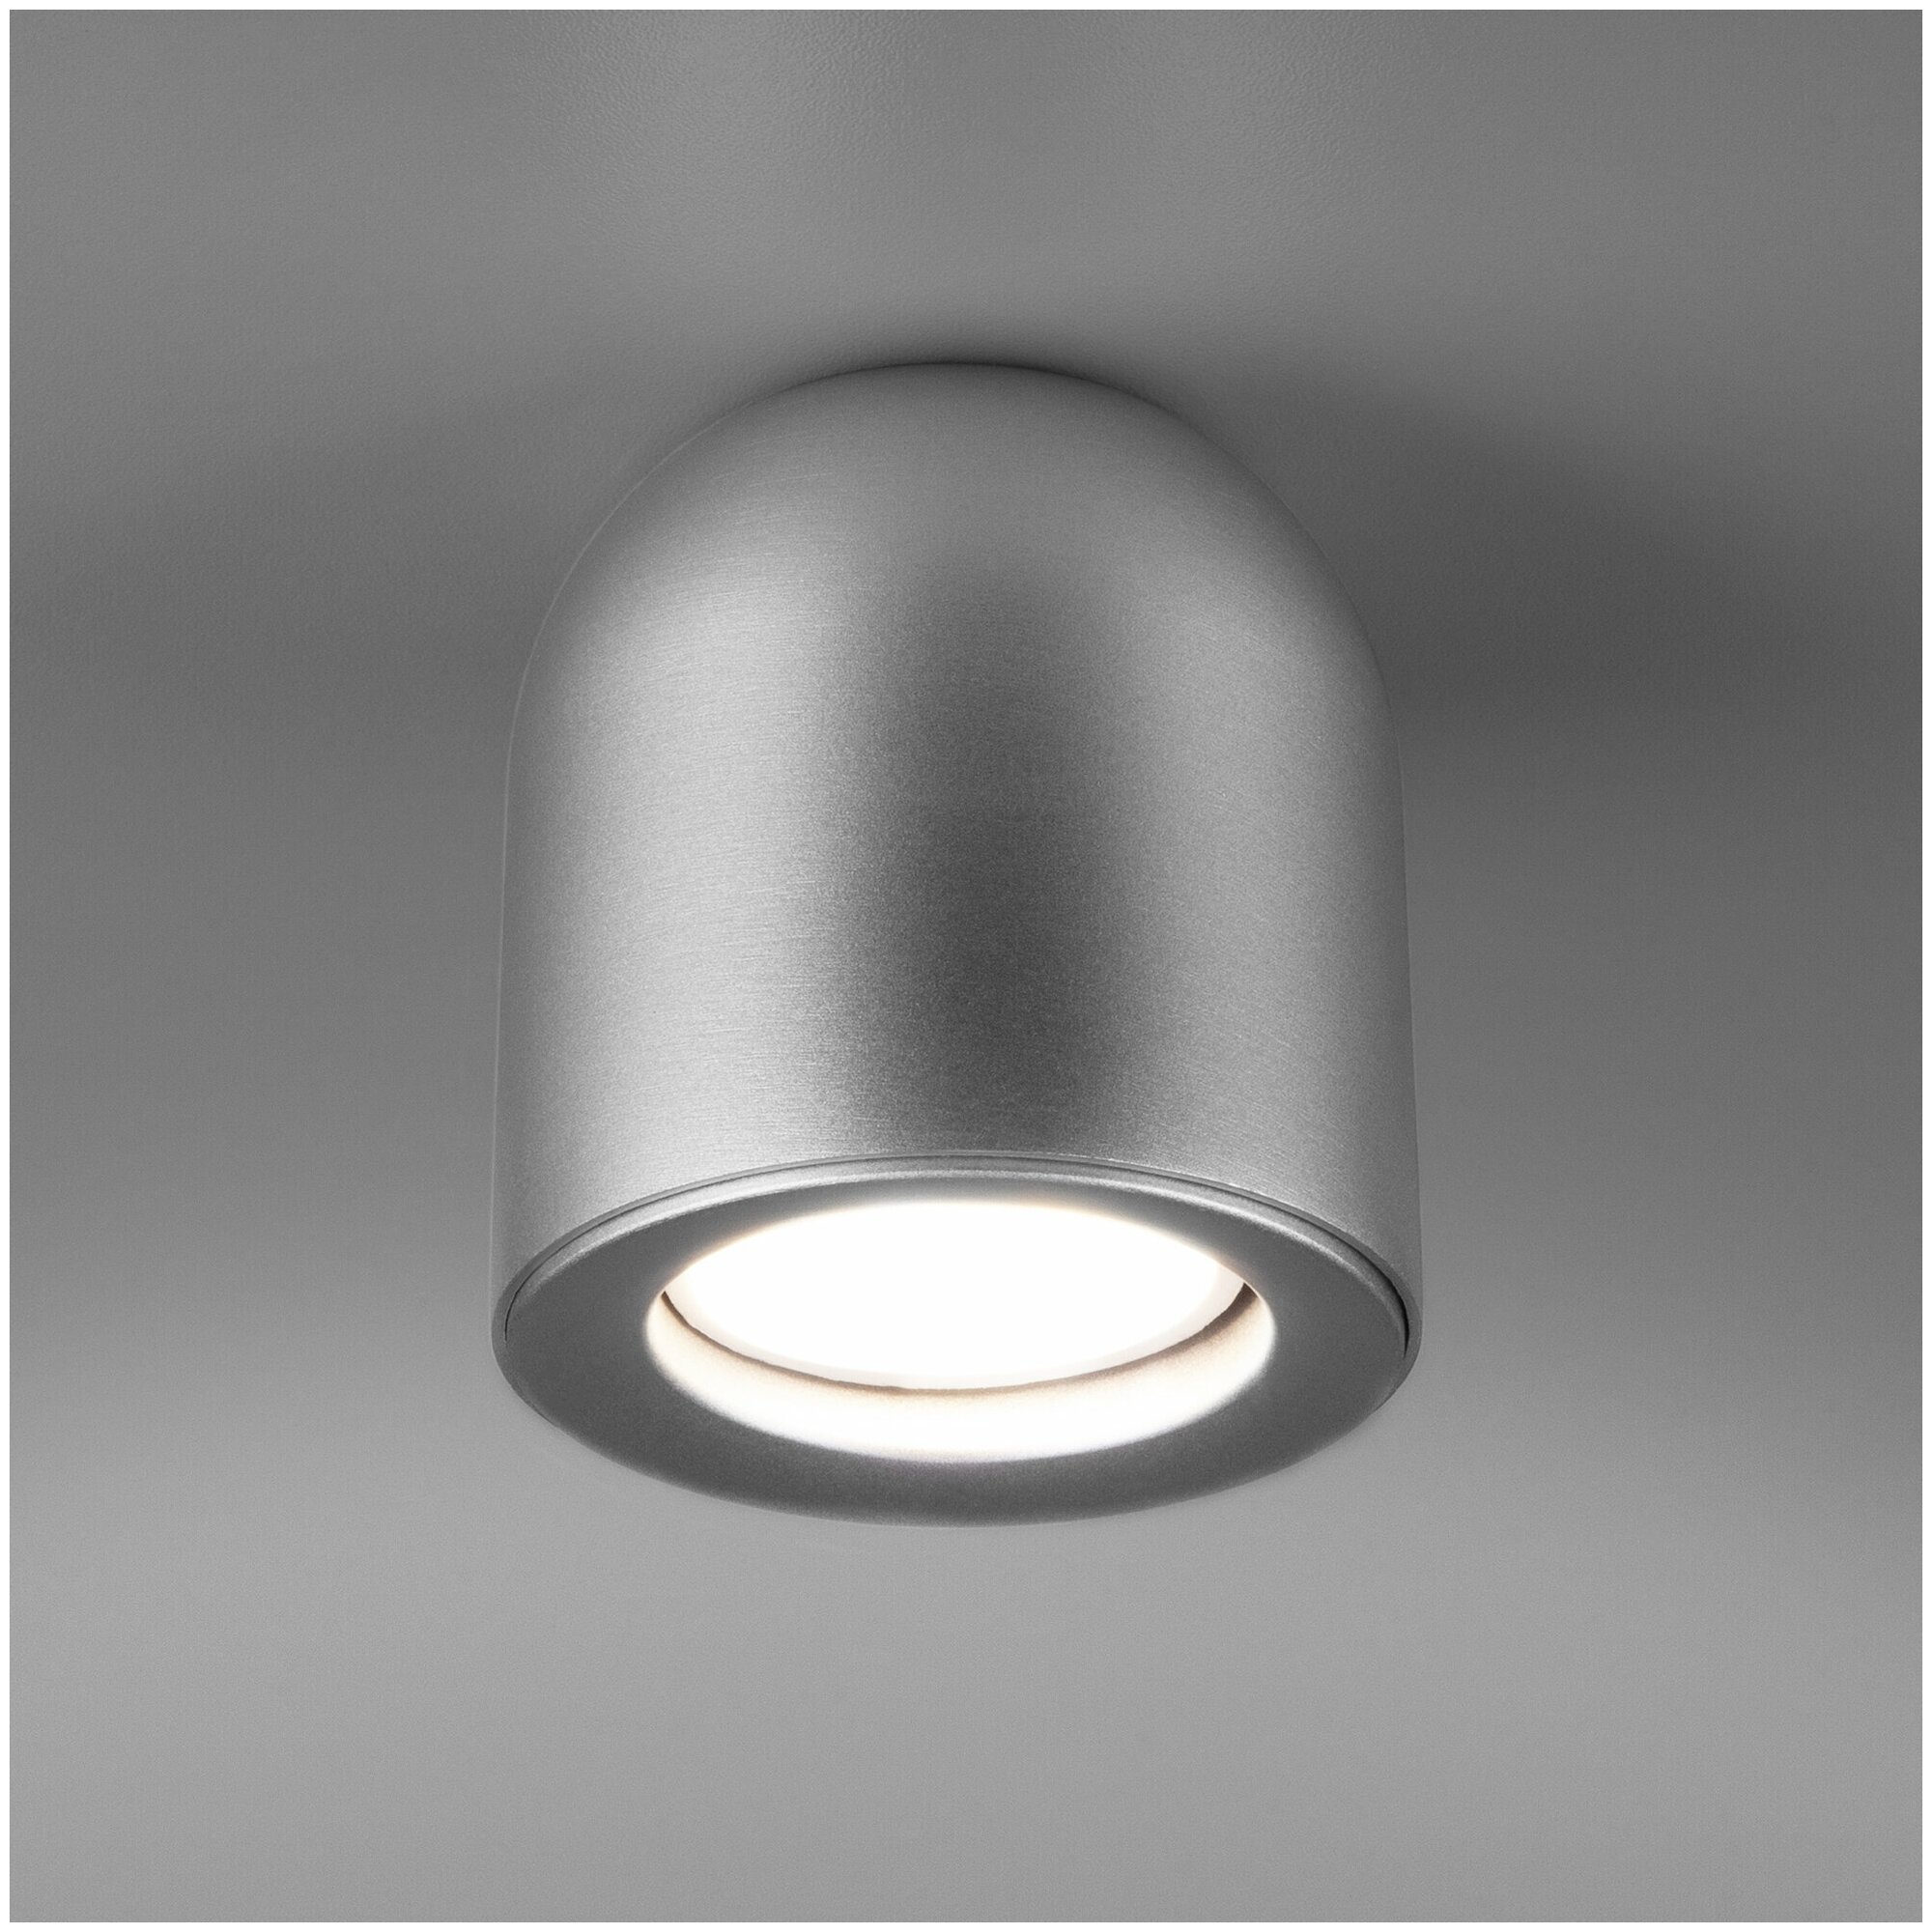 Спот / Накладной потолочный светильник Elektrostandard DLN116 GU10 серебро